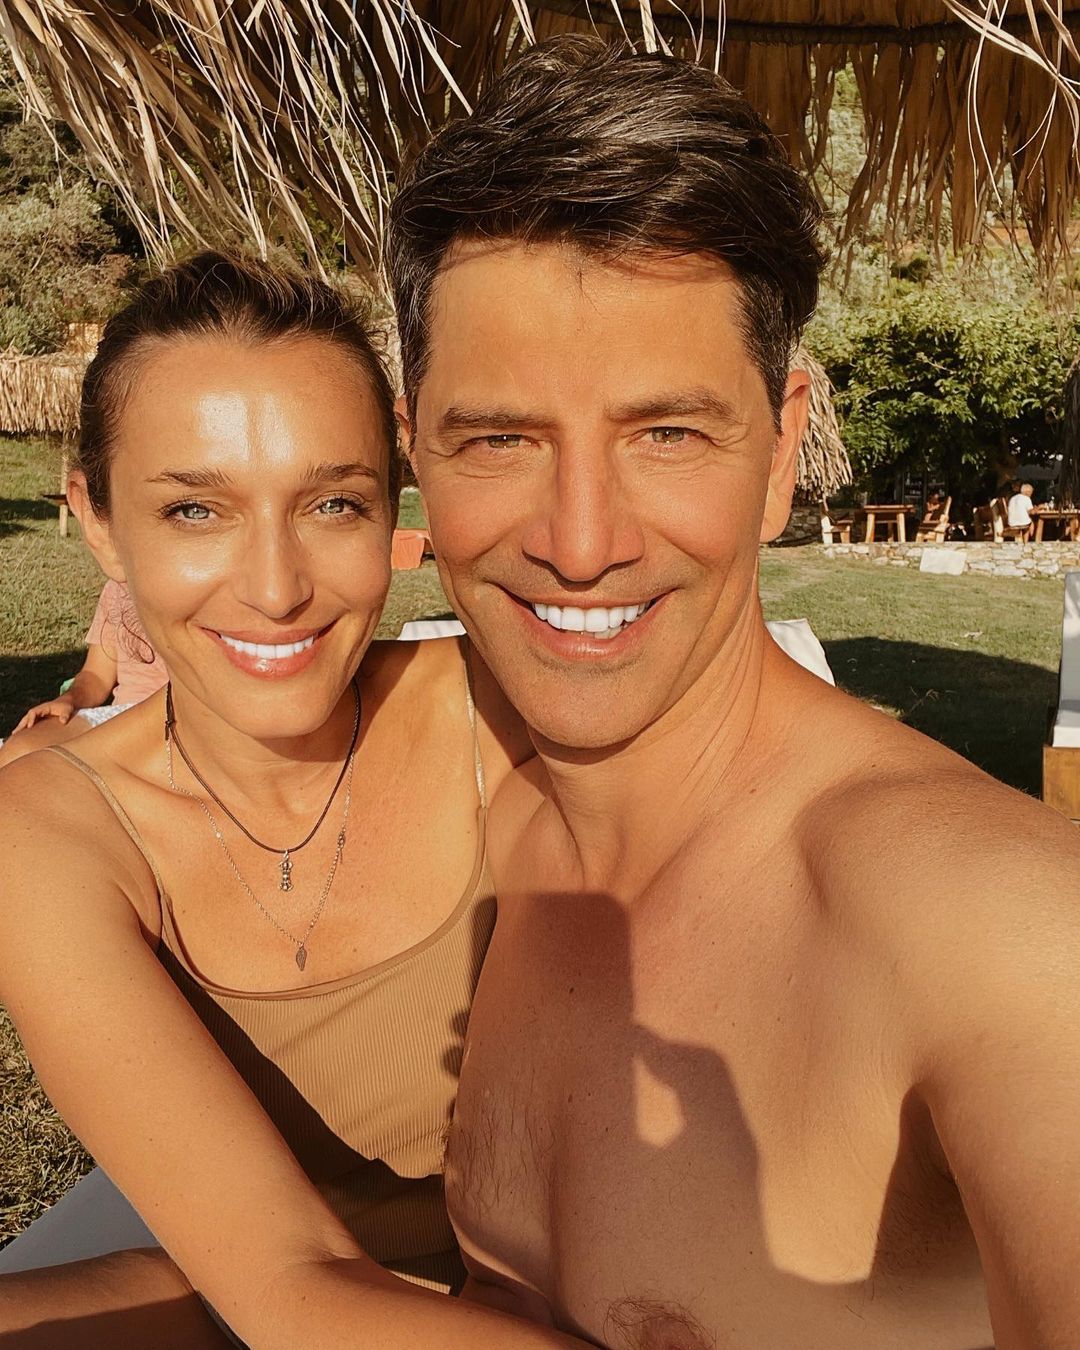 Ο Σάκης Ρουβάς «λιώνει» για την Κατερίνα του στο Instagram: «Είσαι το καλοκαίρι μου»